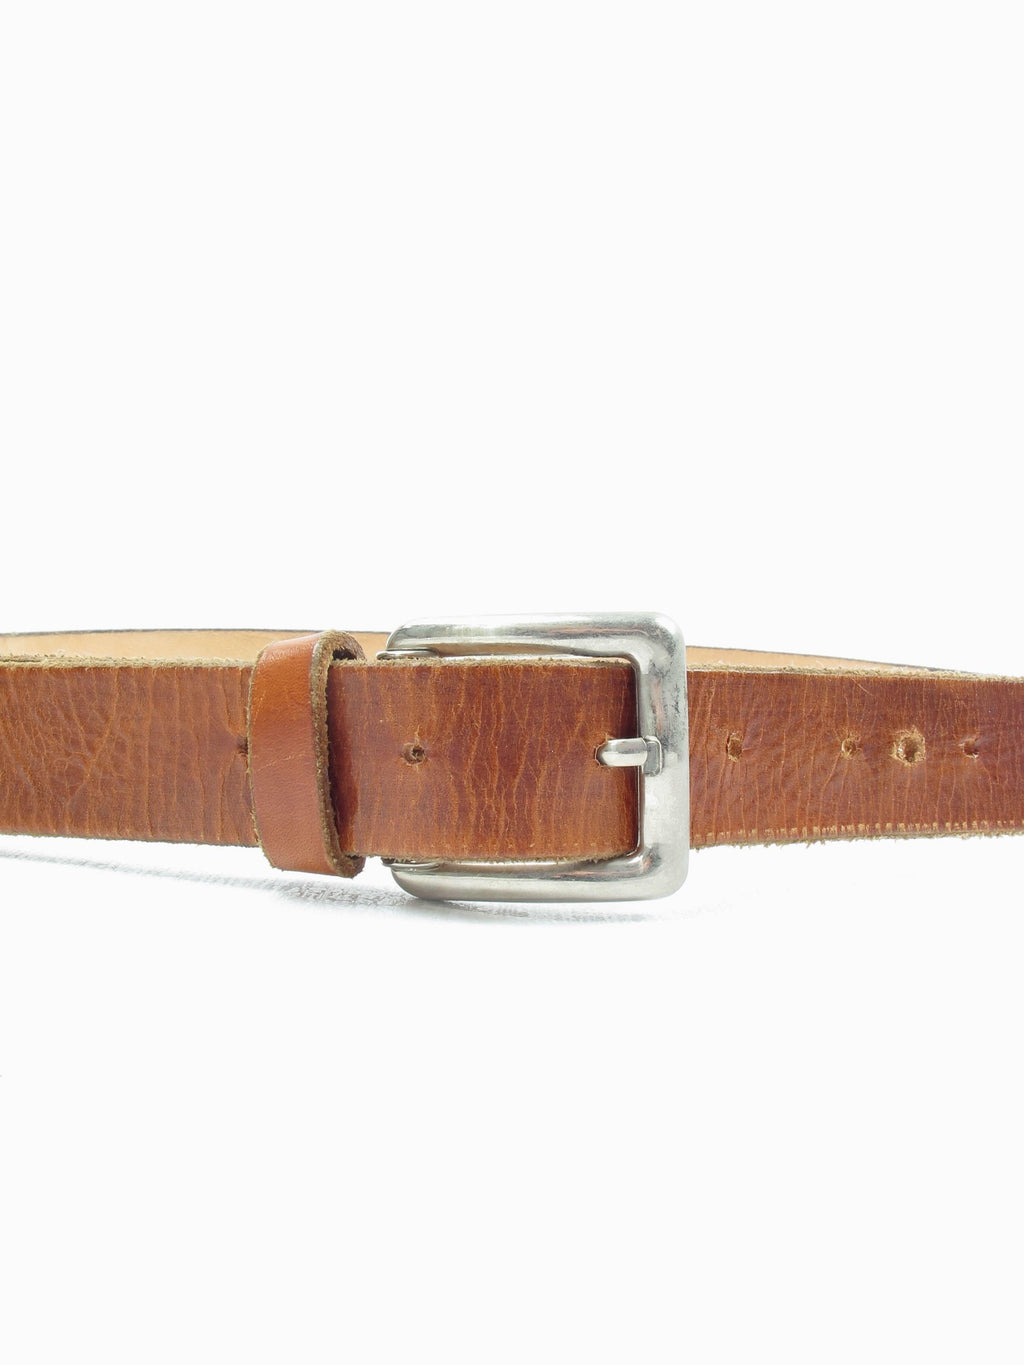 Tan Vintage Leather Belt L - The Harlequin